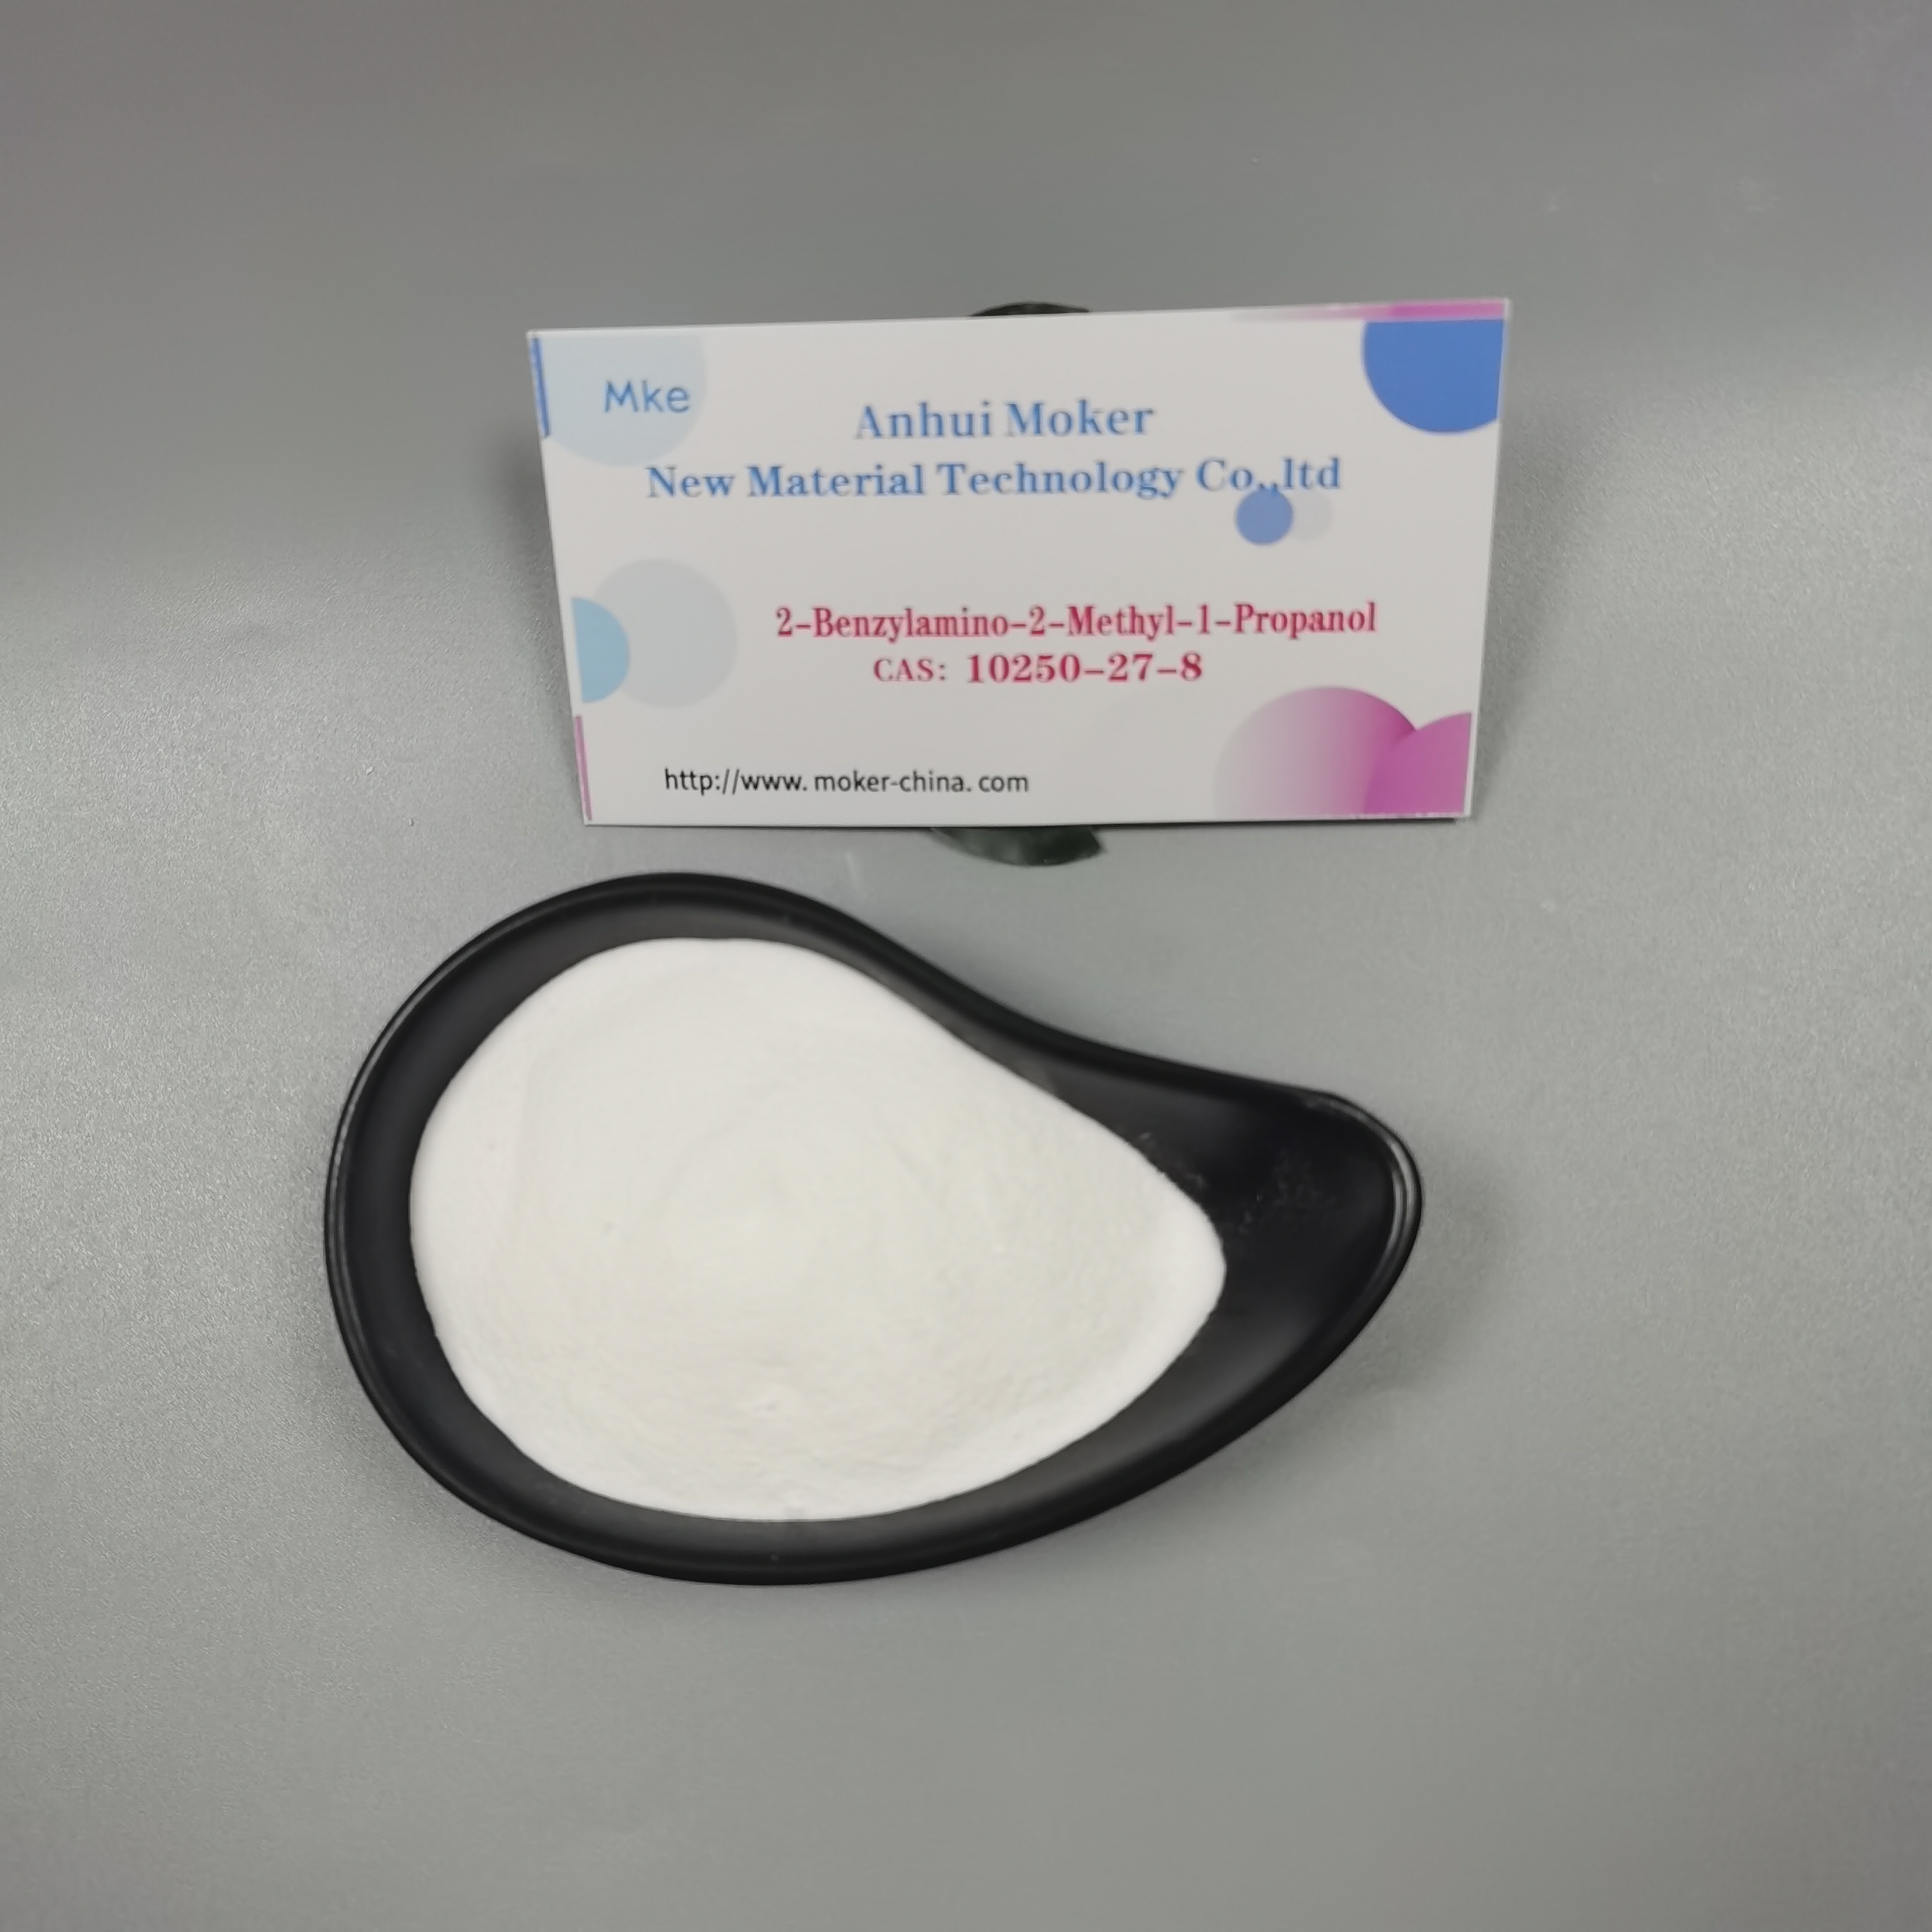 Pulver-Qualitäts-BMK-Glycidate für Forschungschemikalien